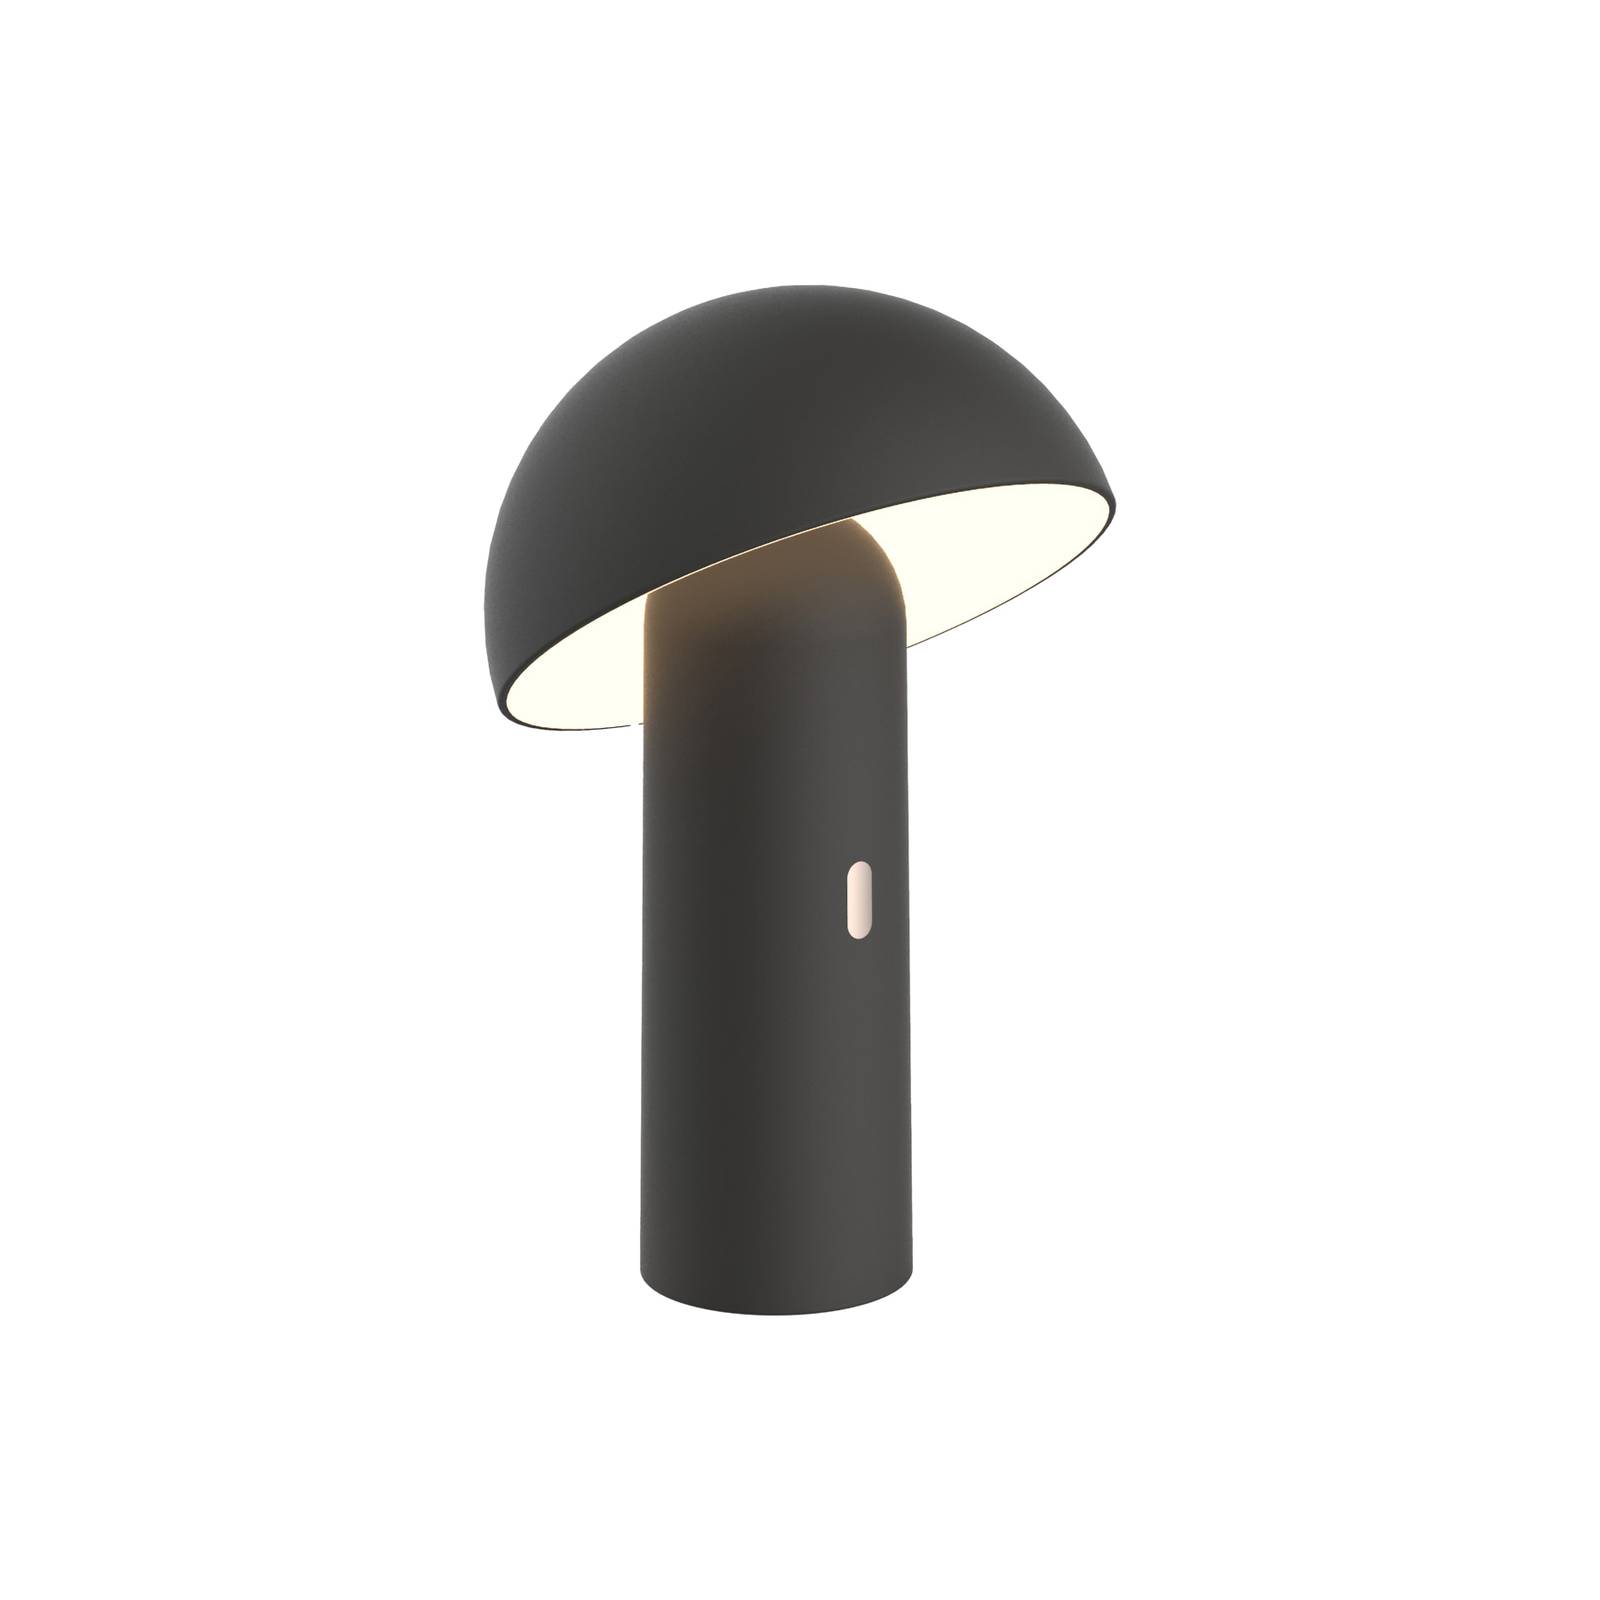 E-shop Aluminor Capsule stolová LED lampa mobilná čierna